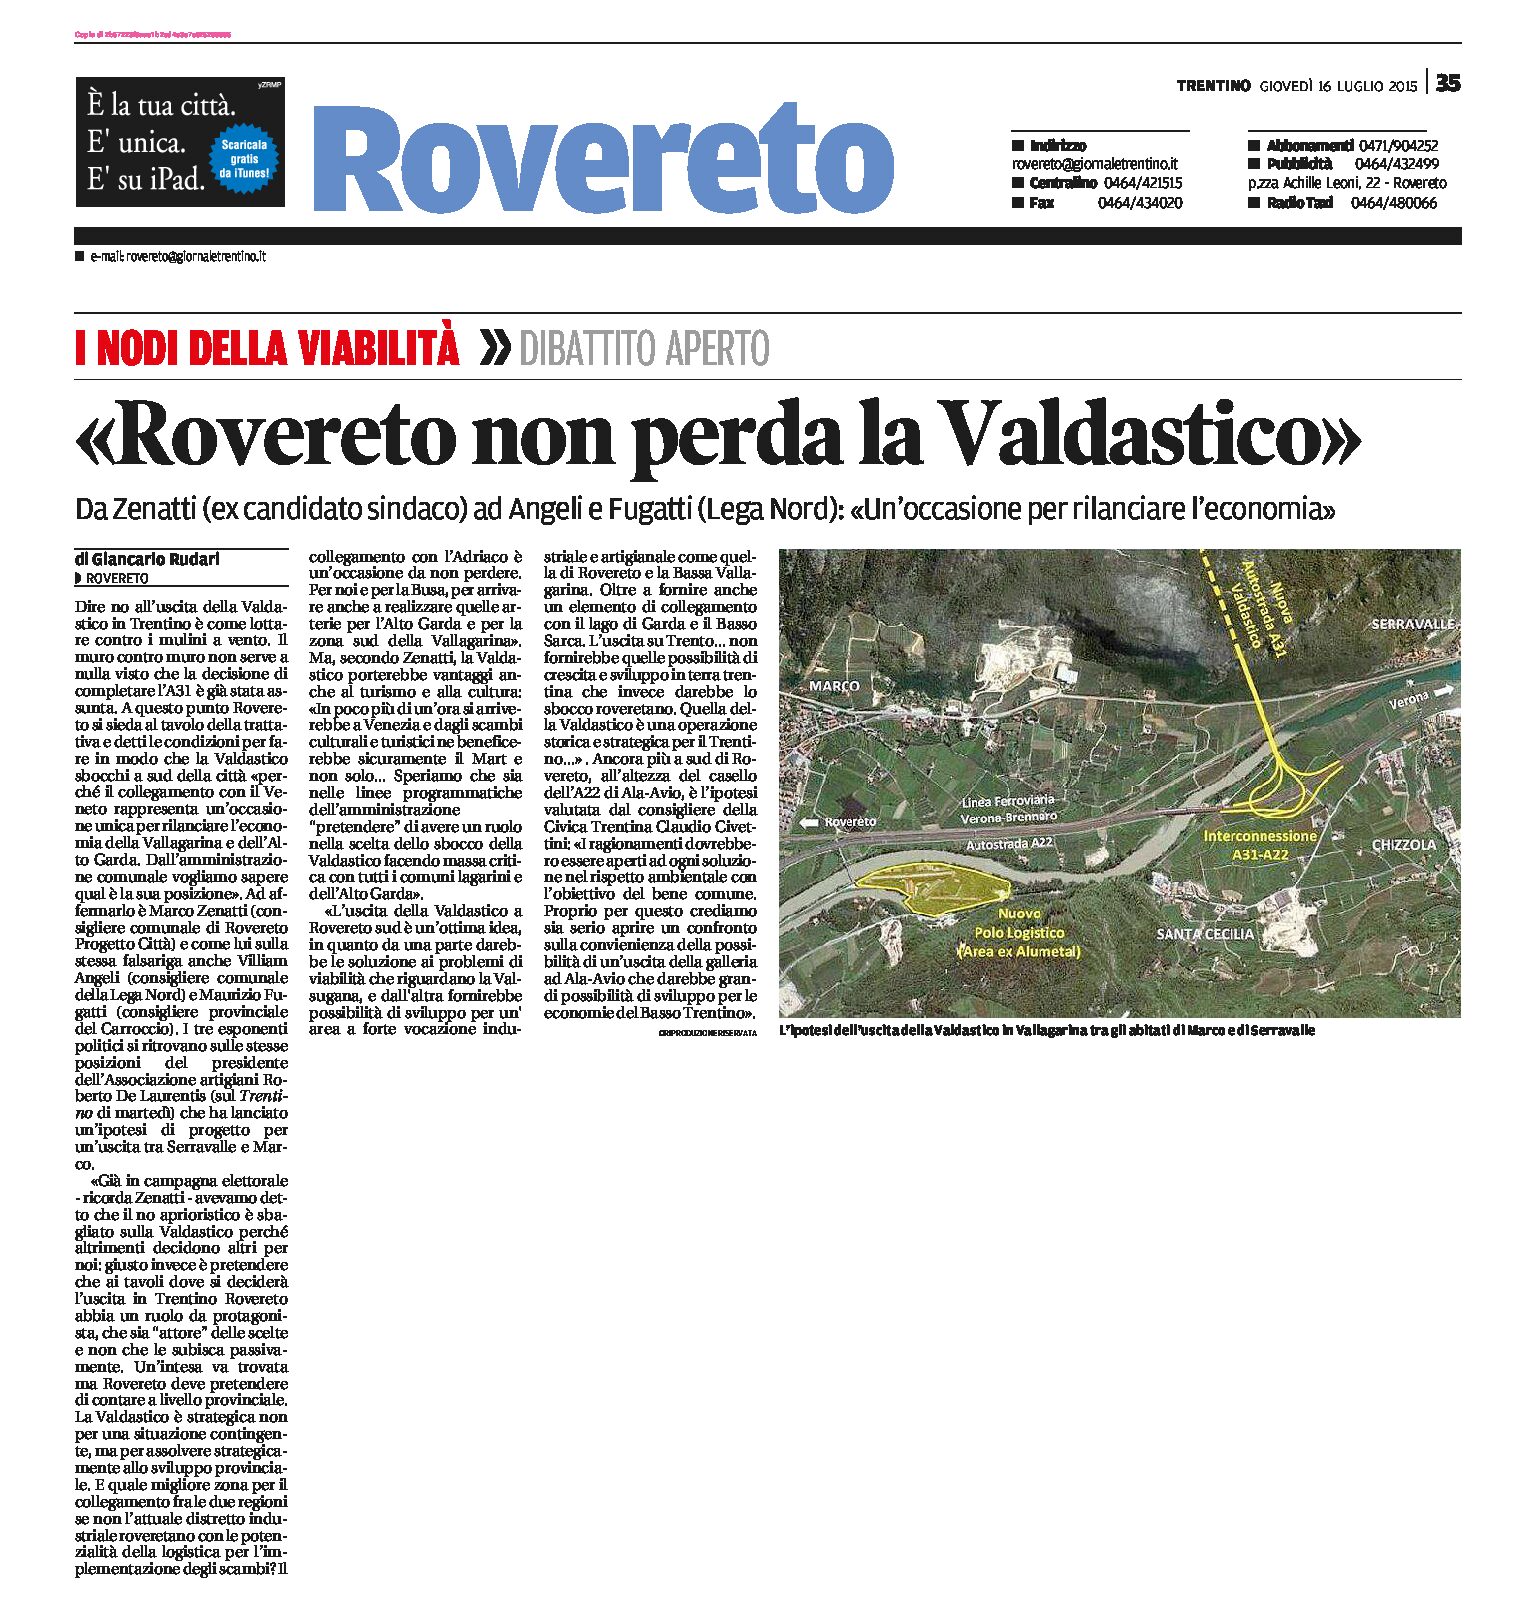 Valdastico: l’uscita a Rovereto secondo il centro destra sarebbe strategica